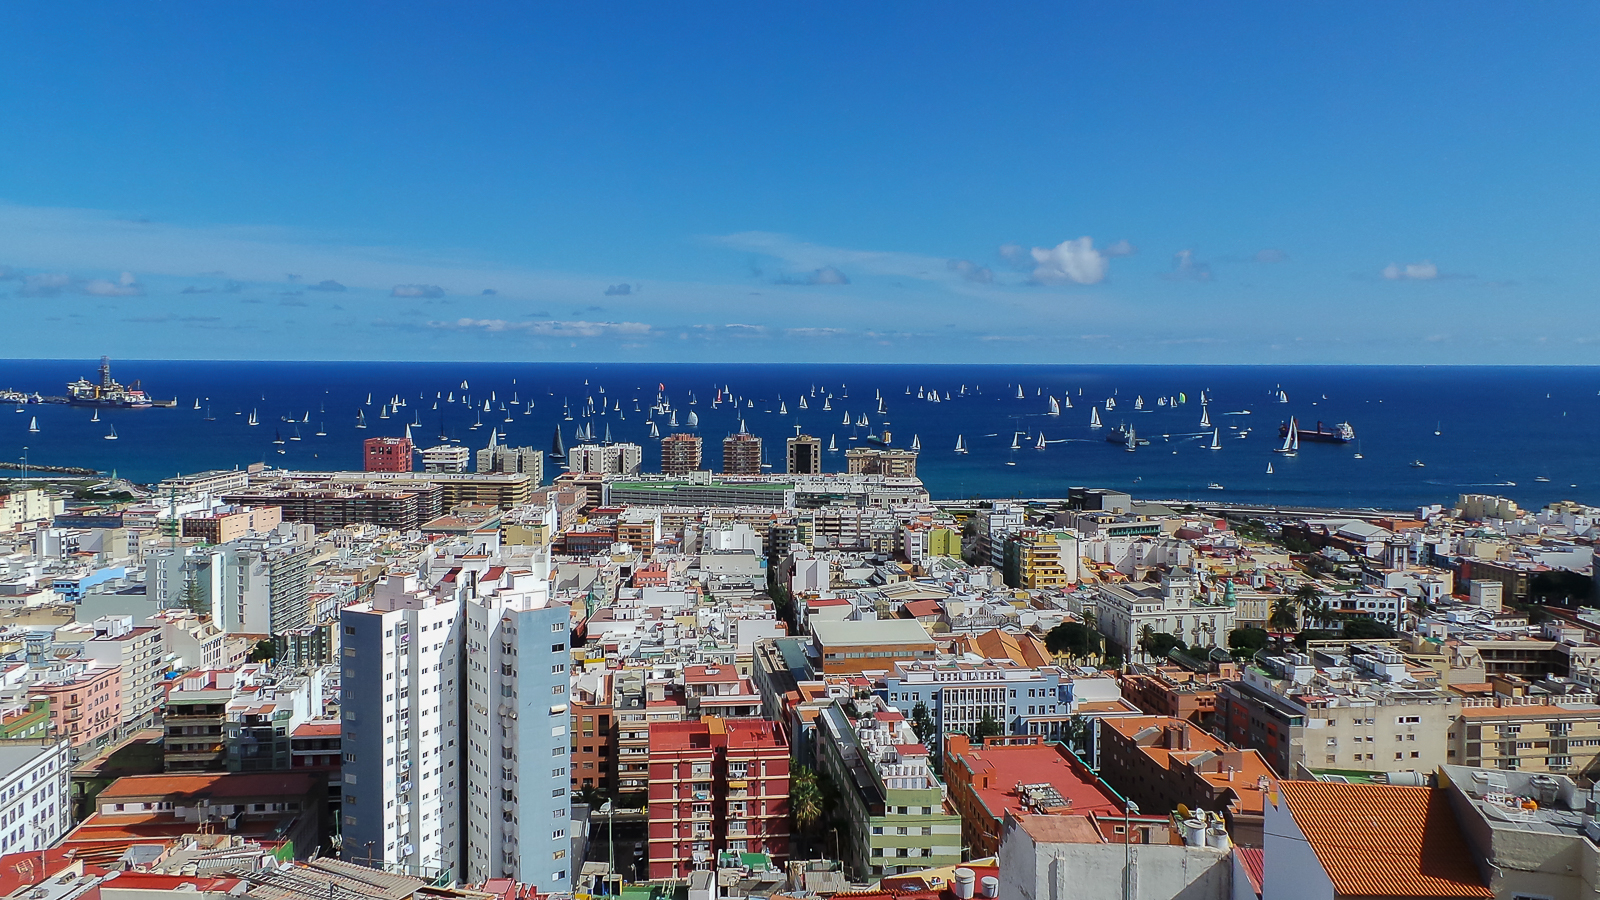 cupón Adquisición Deudor Salida 31 Edición de la Regata ARC 2016 – Mirador de San Nicolás Las Palmas  de Gran Canaria – Isla de Gran Canaria